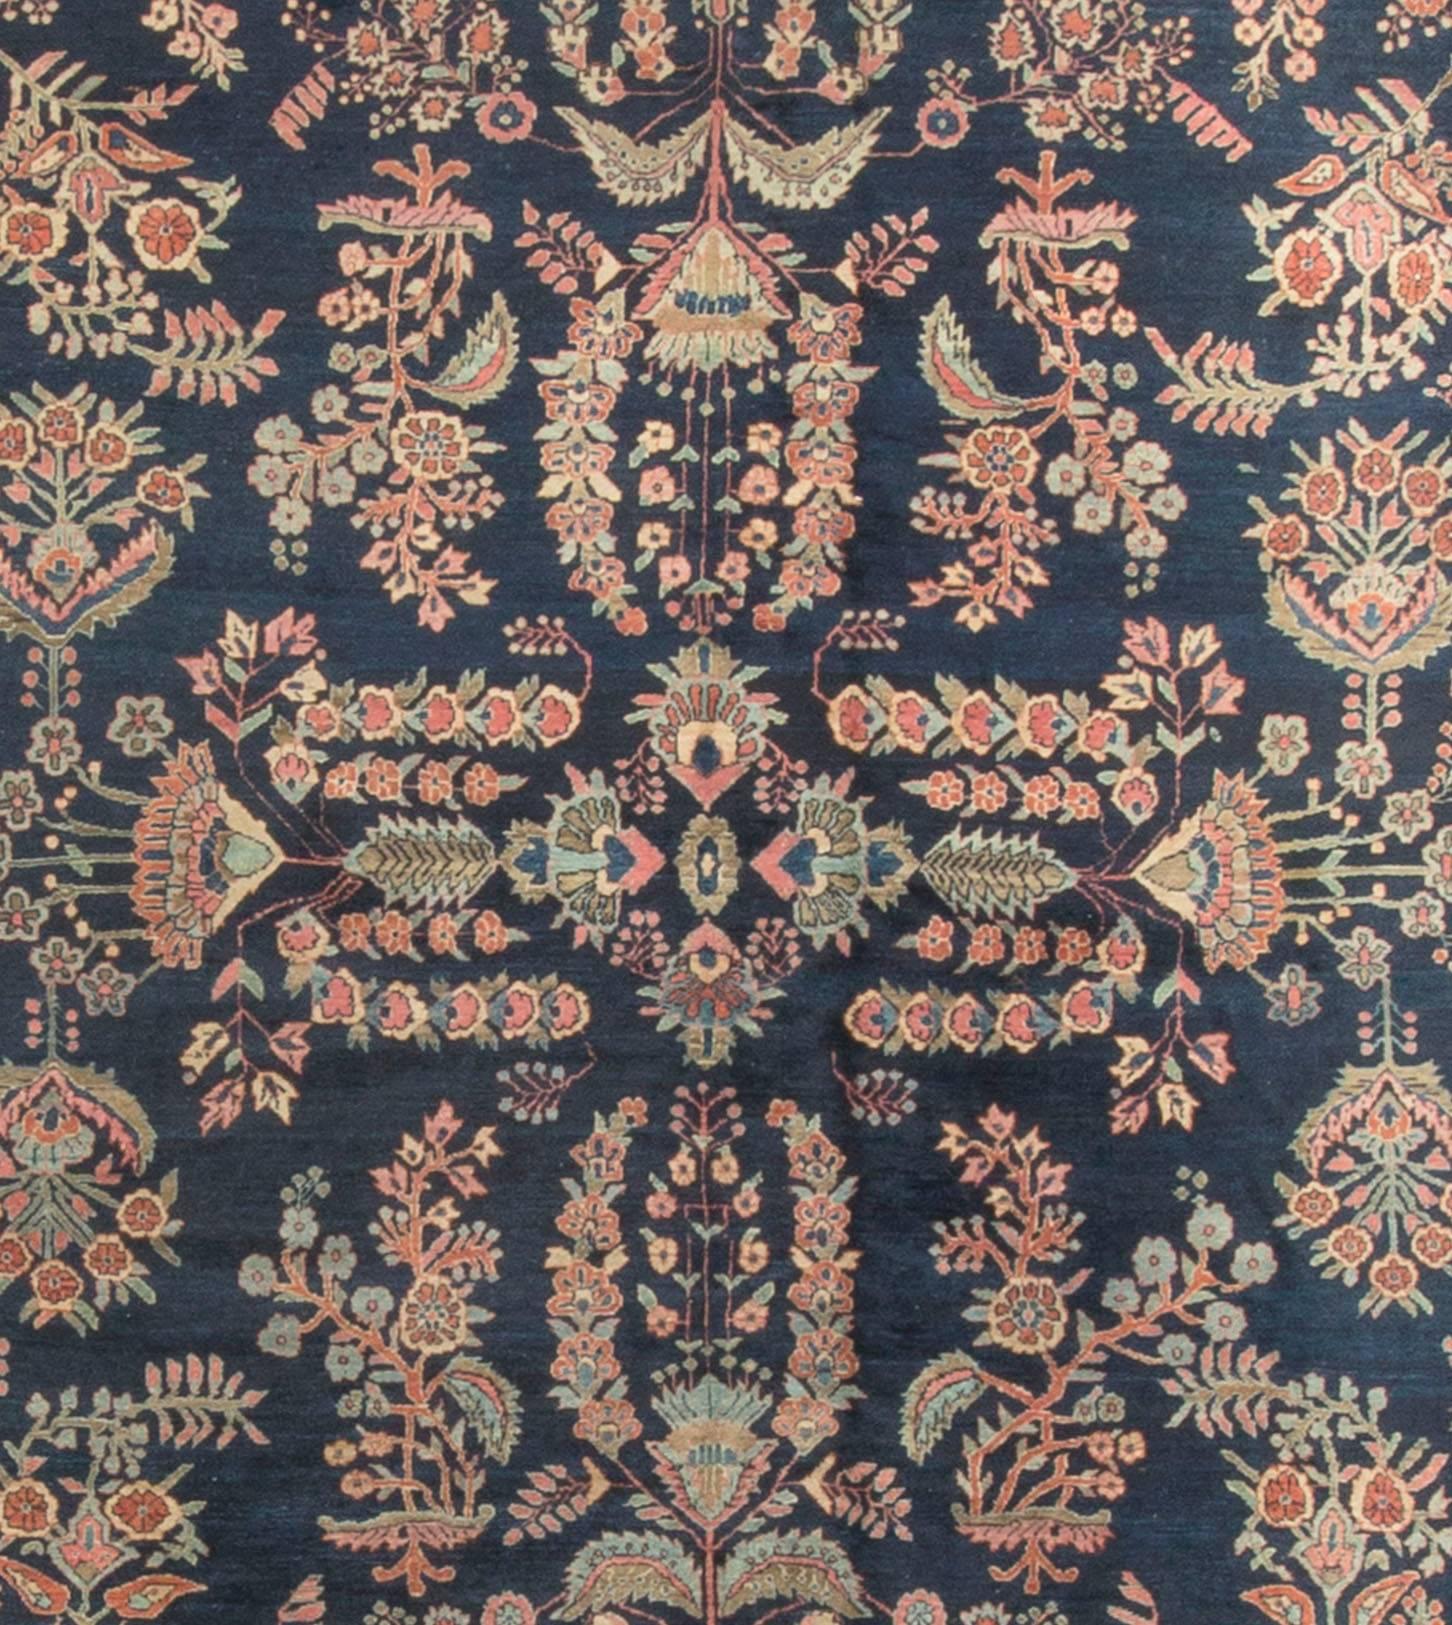 Tapis sarouk persan ancien. Mesures : 9' x 12'10. Les tapis Sarouk proviennent du village de Saruk, situé à environ 25 miles au nord d'Arak, dans l'ouest de la Perse. Les tapis sarouks ont été produits pendant une grande partie du siècle dernier.